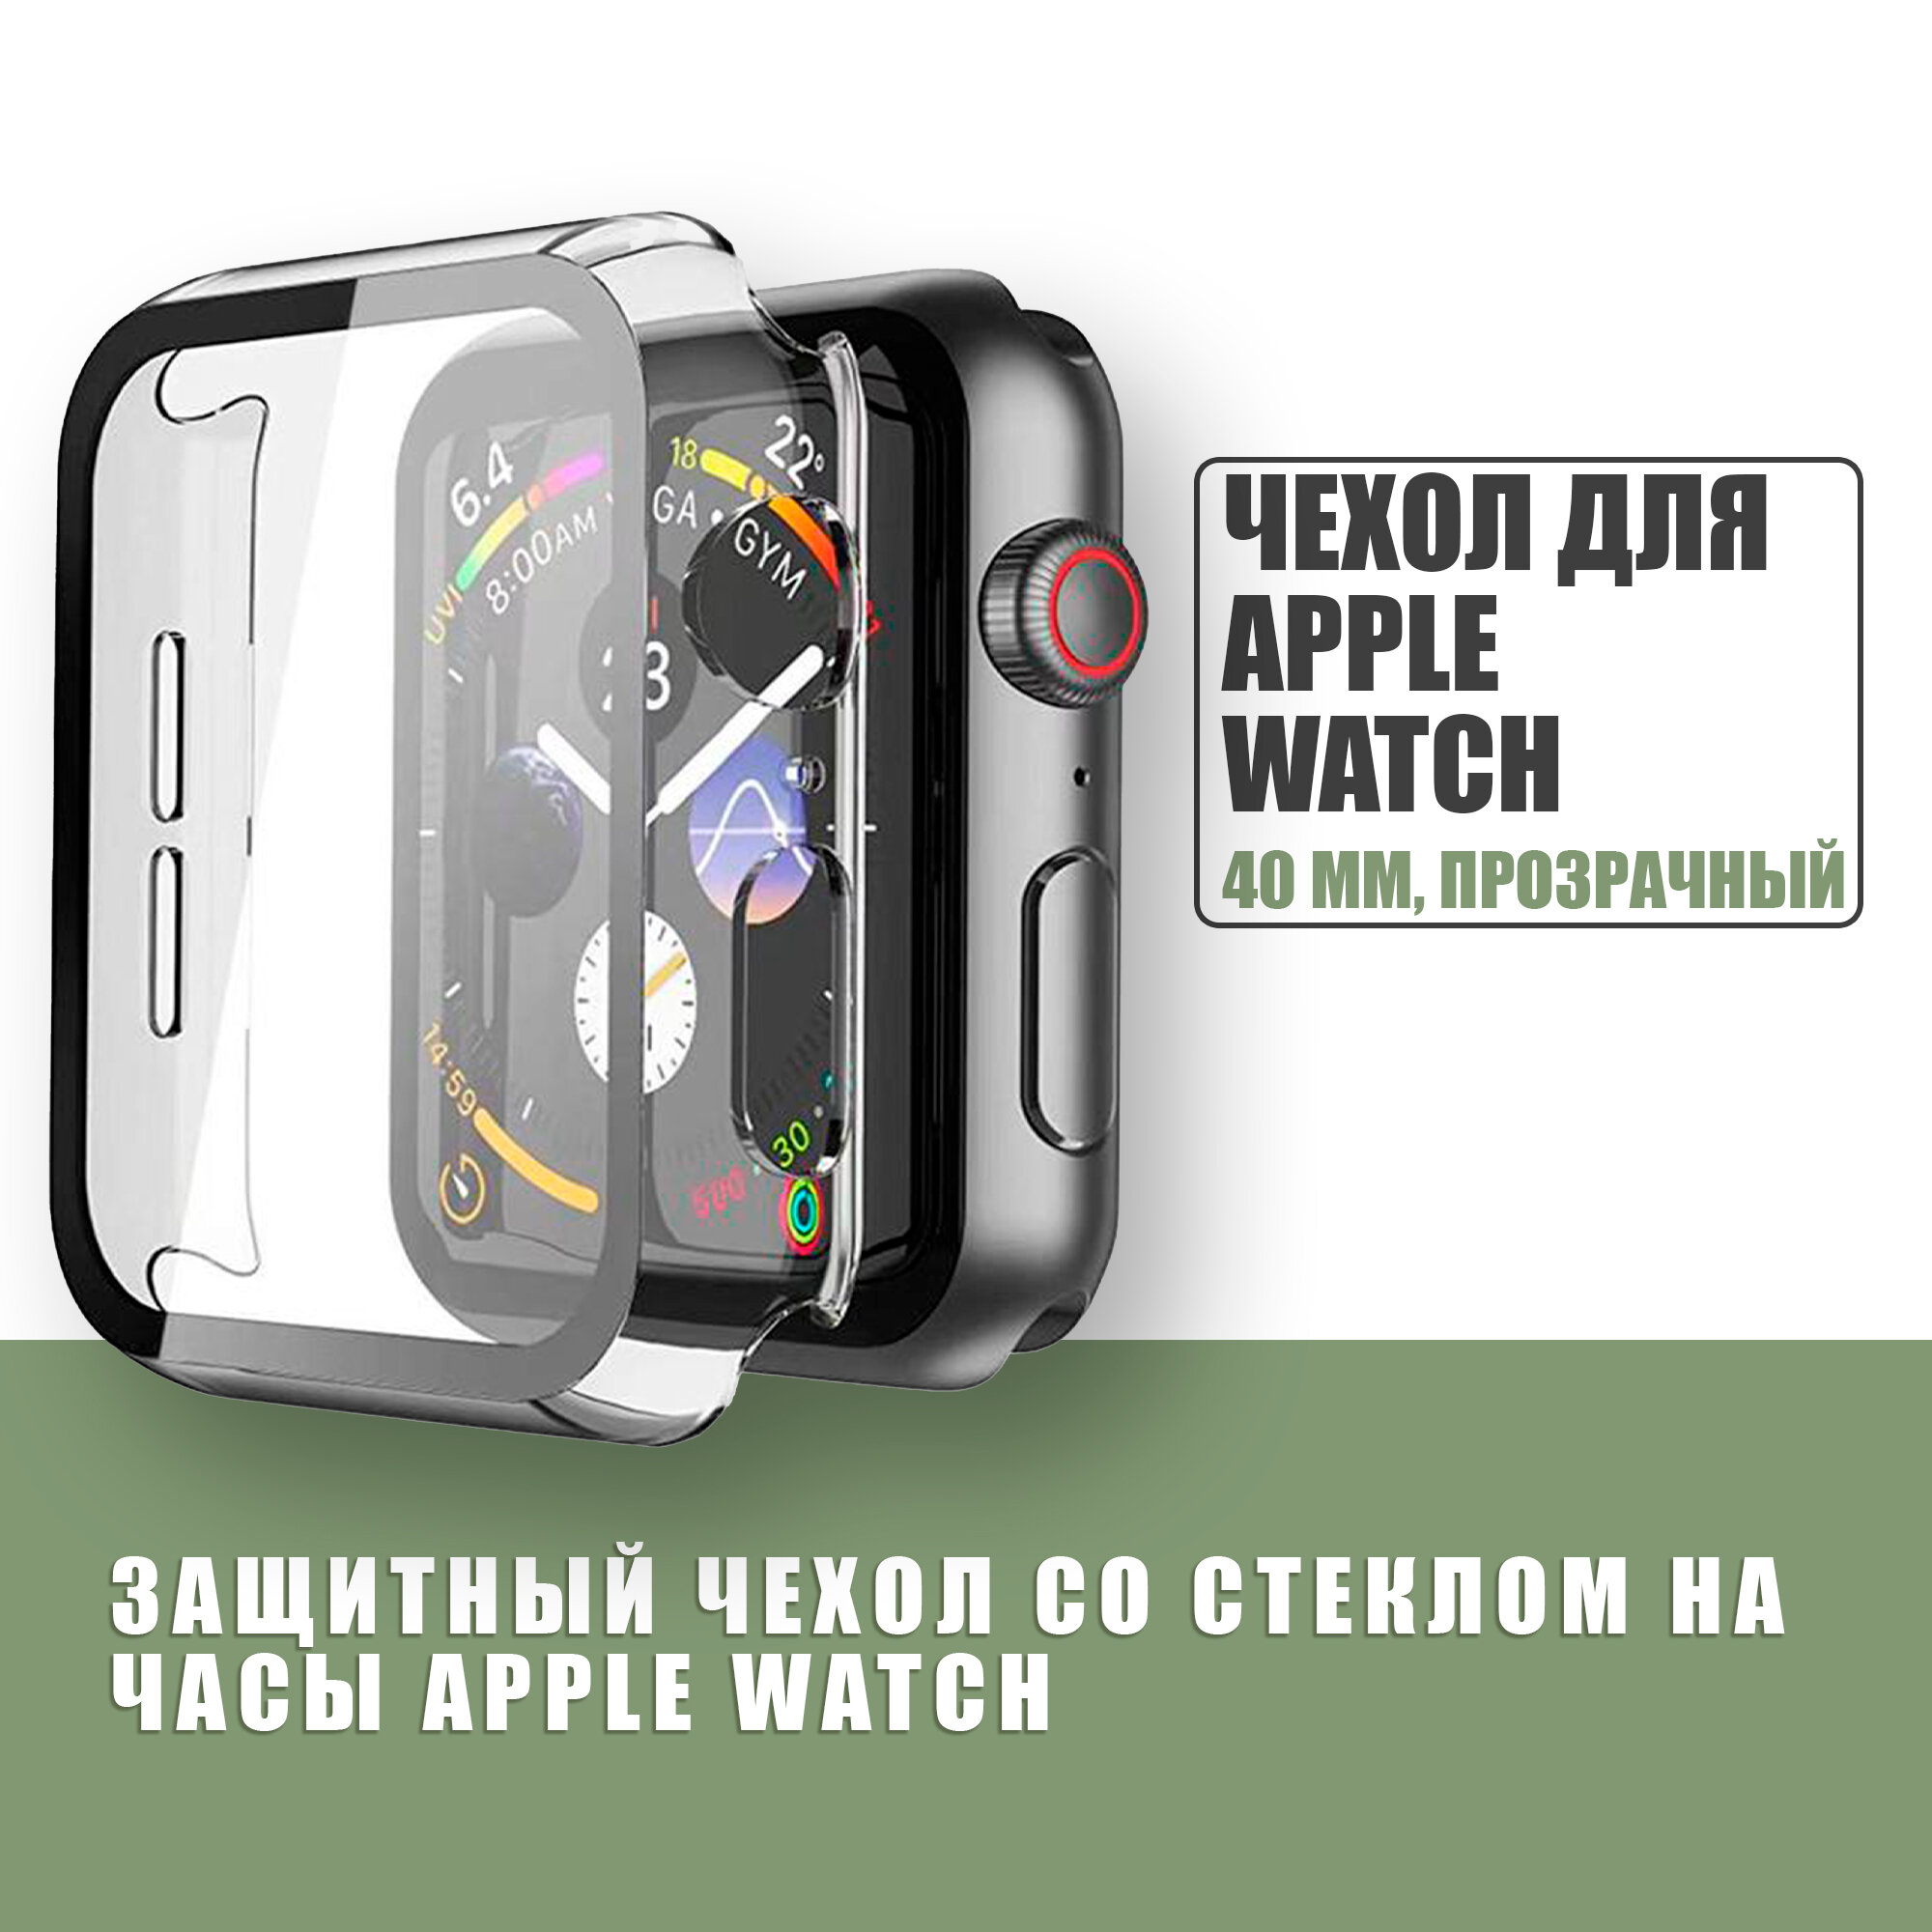 Защитный чехол стекло на часы Apple Watch 40 mm